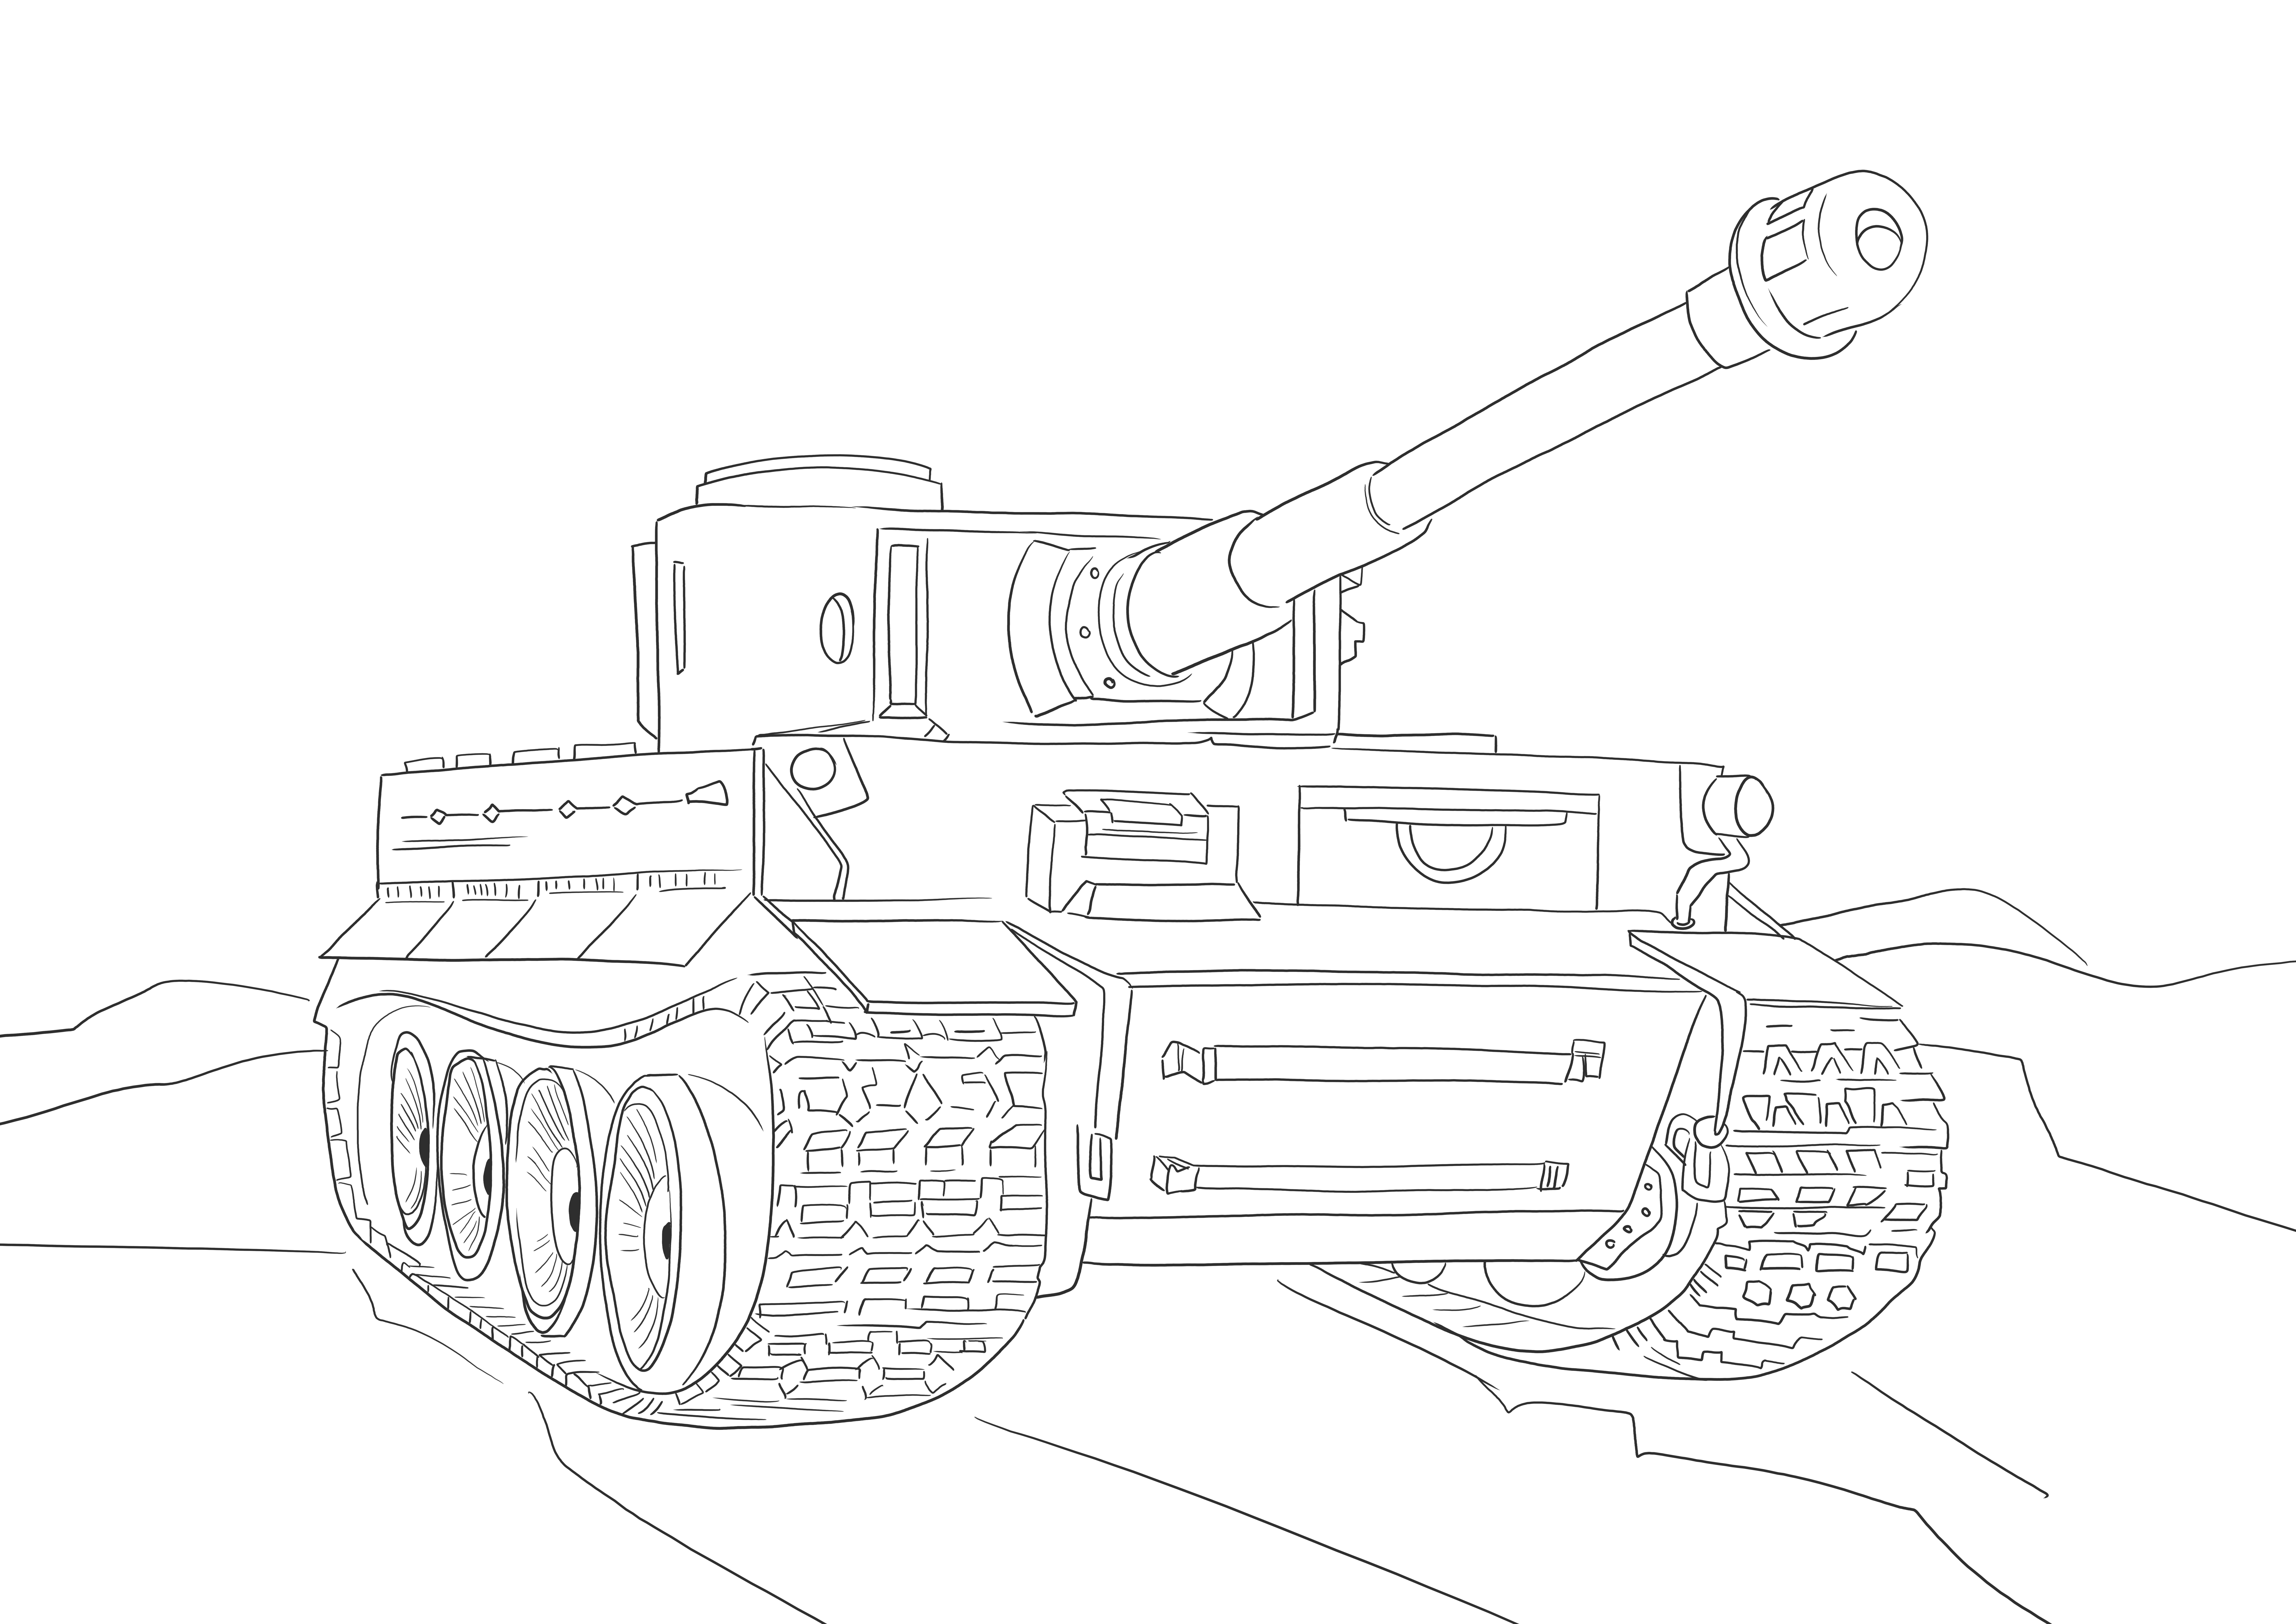 Immagine da colorare e stampare senza carri armati della grande tigre per gli amanti dei carri armati